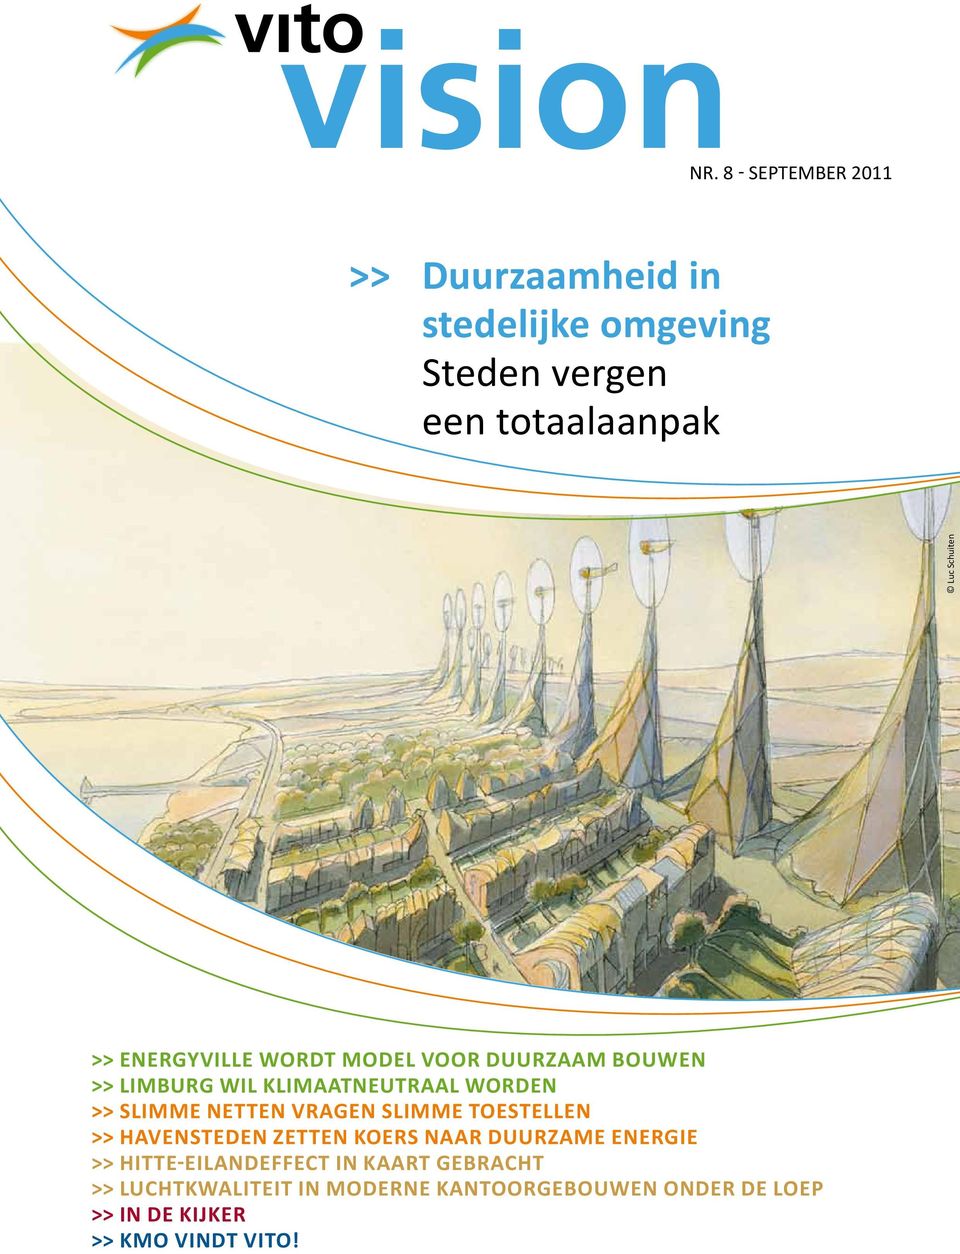 Energyville wordt model voor duurzaam bouwen >> Limburg wil klimaatneutraal worden >> Slimme netten